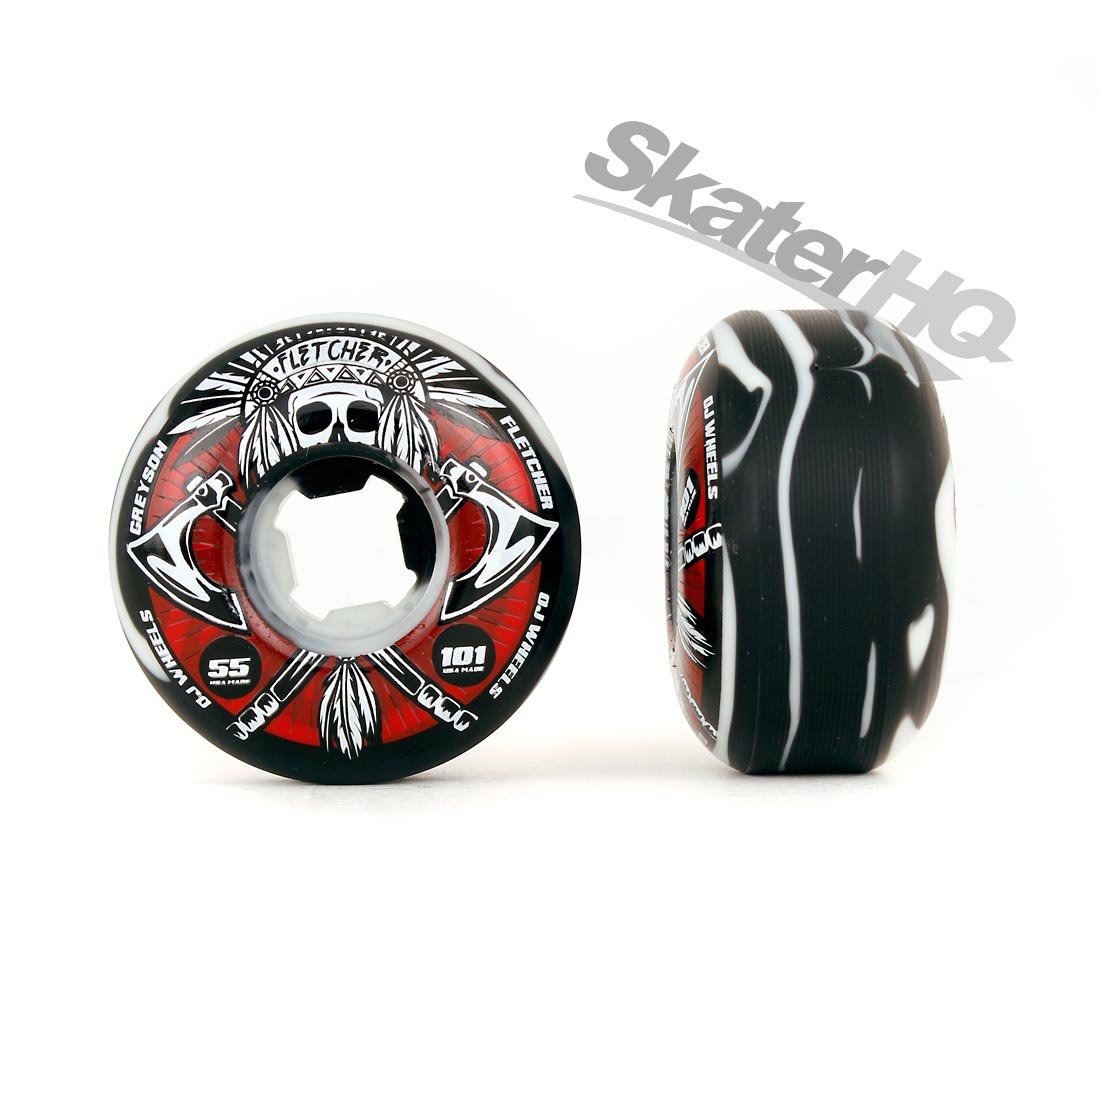 OJs Fletcher Tomahawk 53mm - Black/White Swirl Skateboard Wheels